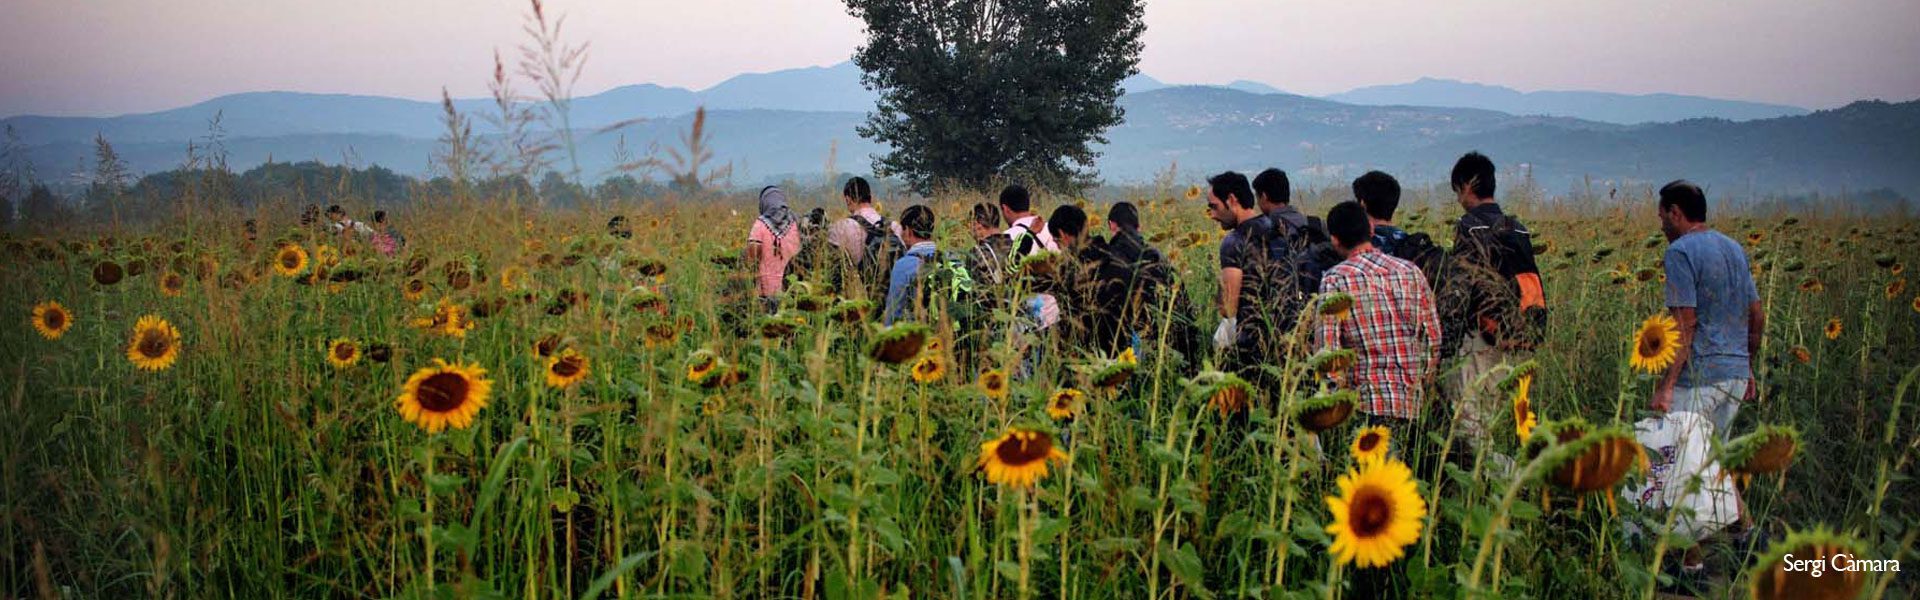 Una família de refugiats camina cap a Macedònia - Càritas